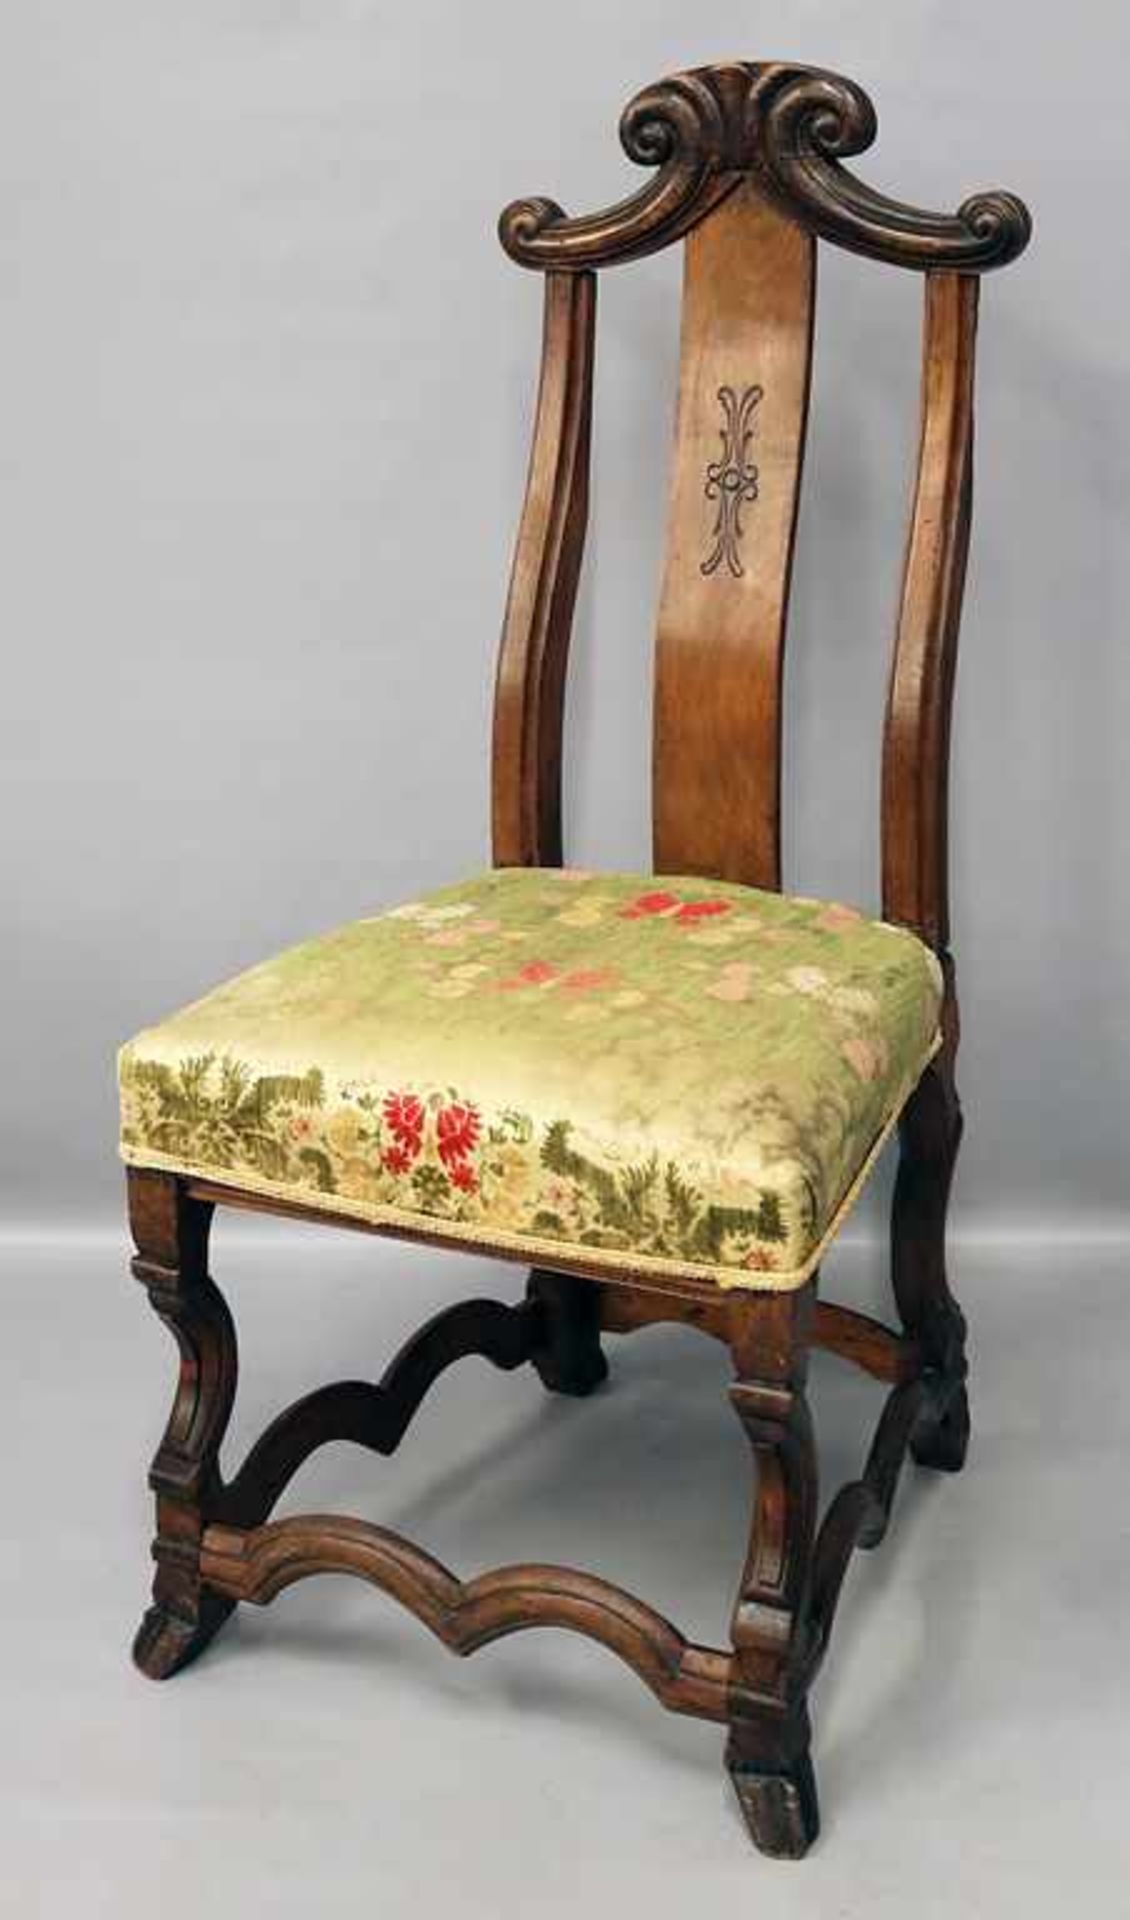 Barock-Stuhl.Hölzernes Gestell, reliefierte Rückenlehne mit Bekrönung, gepolsterte Sitzfläche.